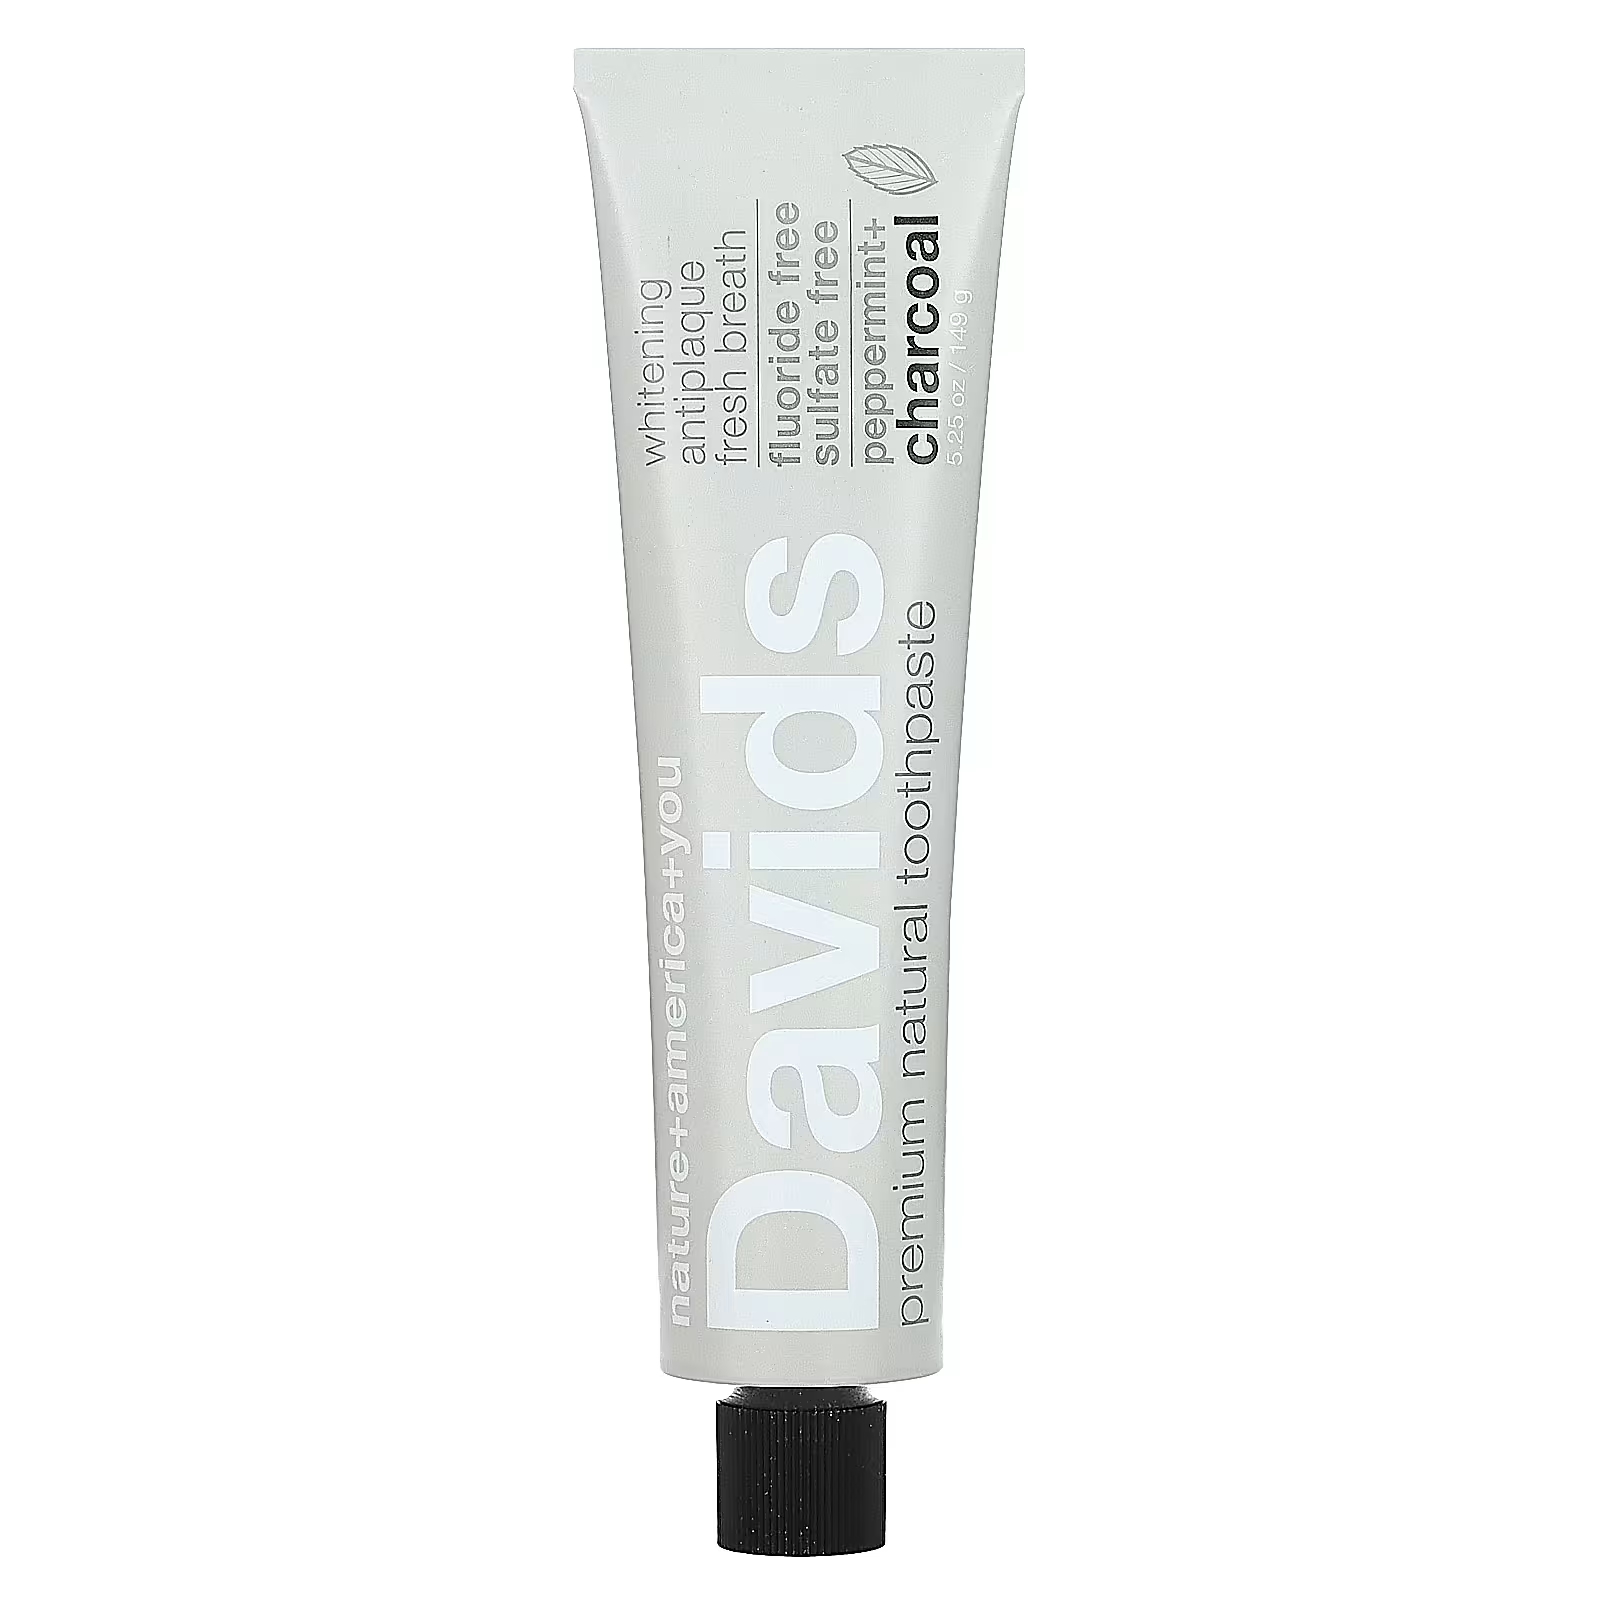 Зубная паста Davids Natural Toothpaste мята + уголь, 149 г dr brite extreme whitening toothpaste активированный уголь свежая мята 142 г 5 унций